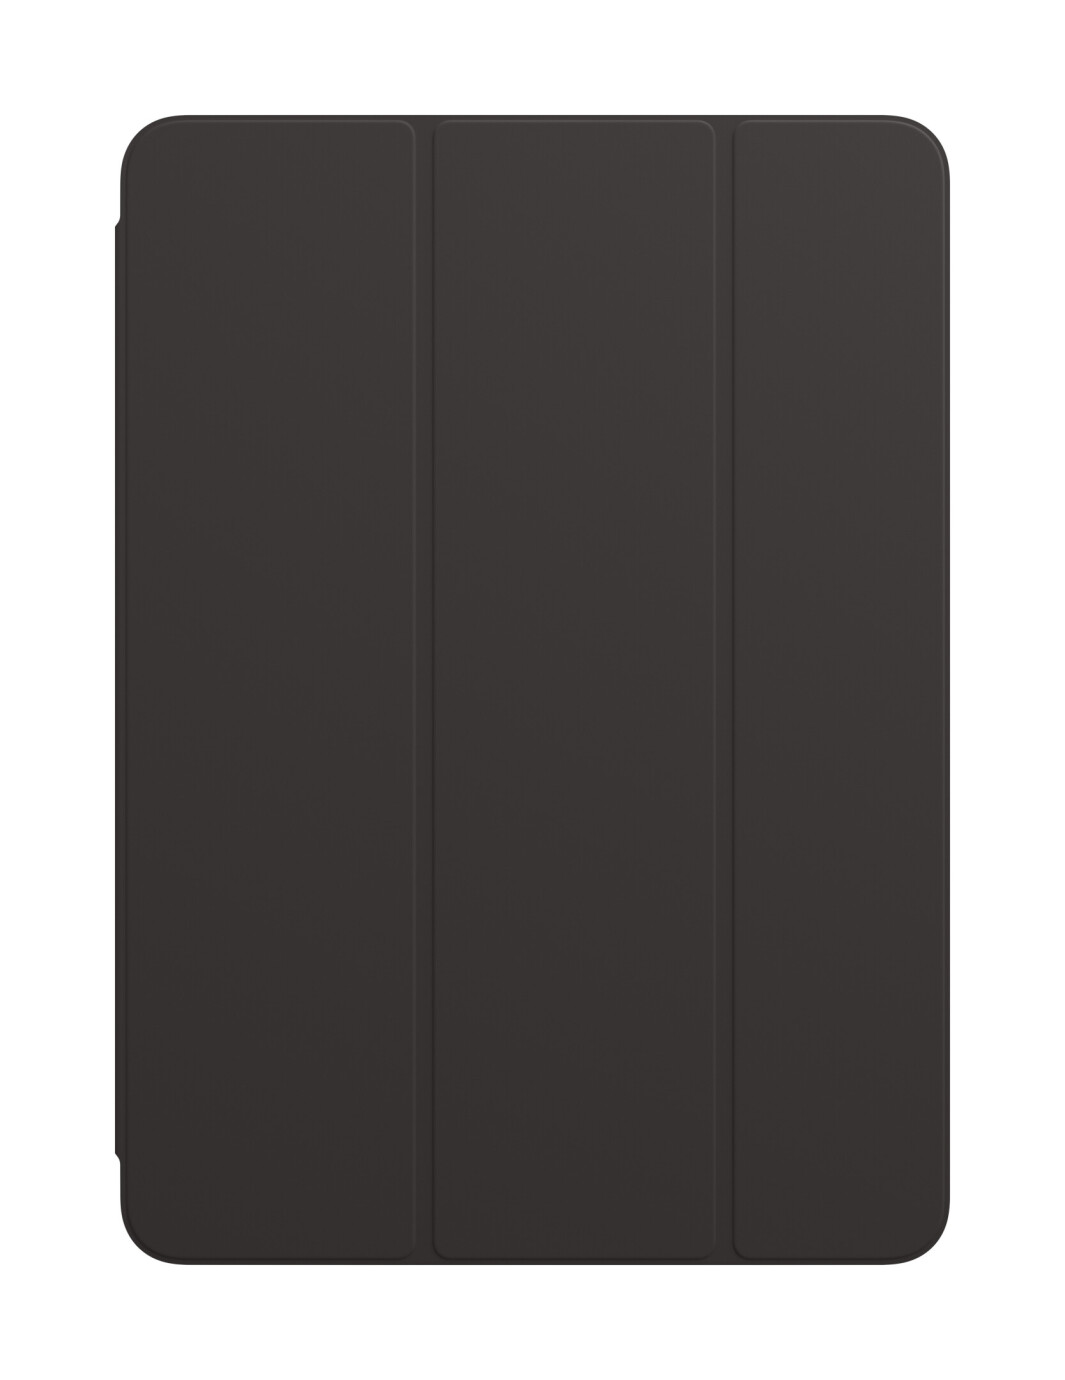 Apple Smart Folio für iPad Air (4. Generation) - Schwarz